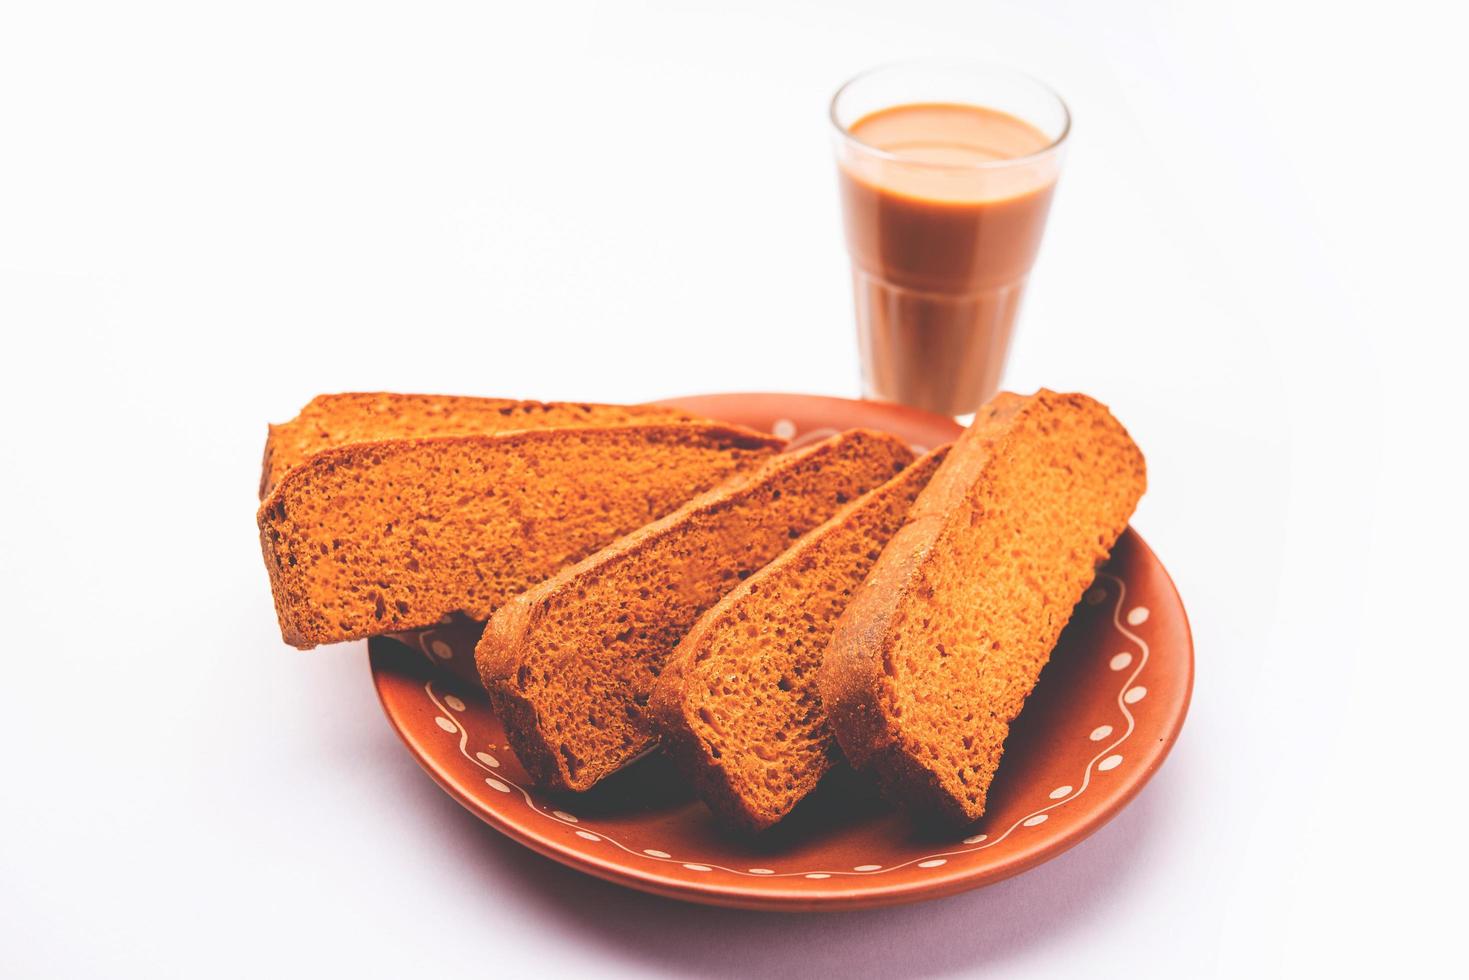 krokant taart beschuit of Delhi geroosterd brood met masala thee foto